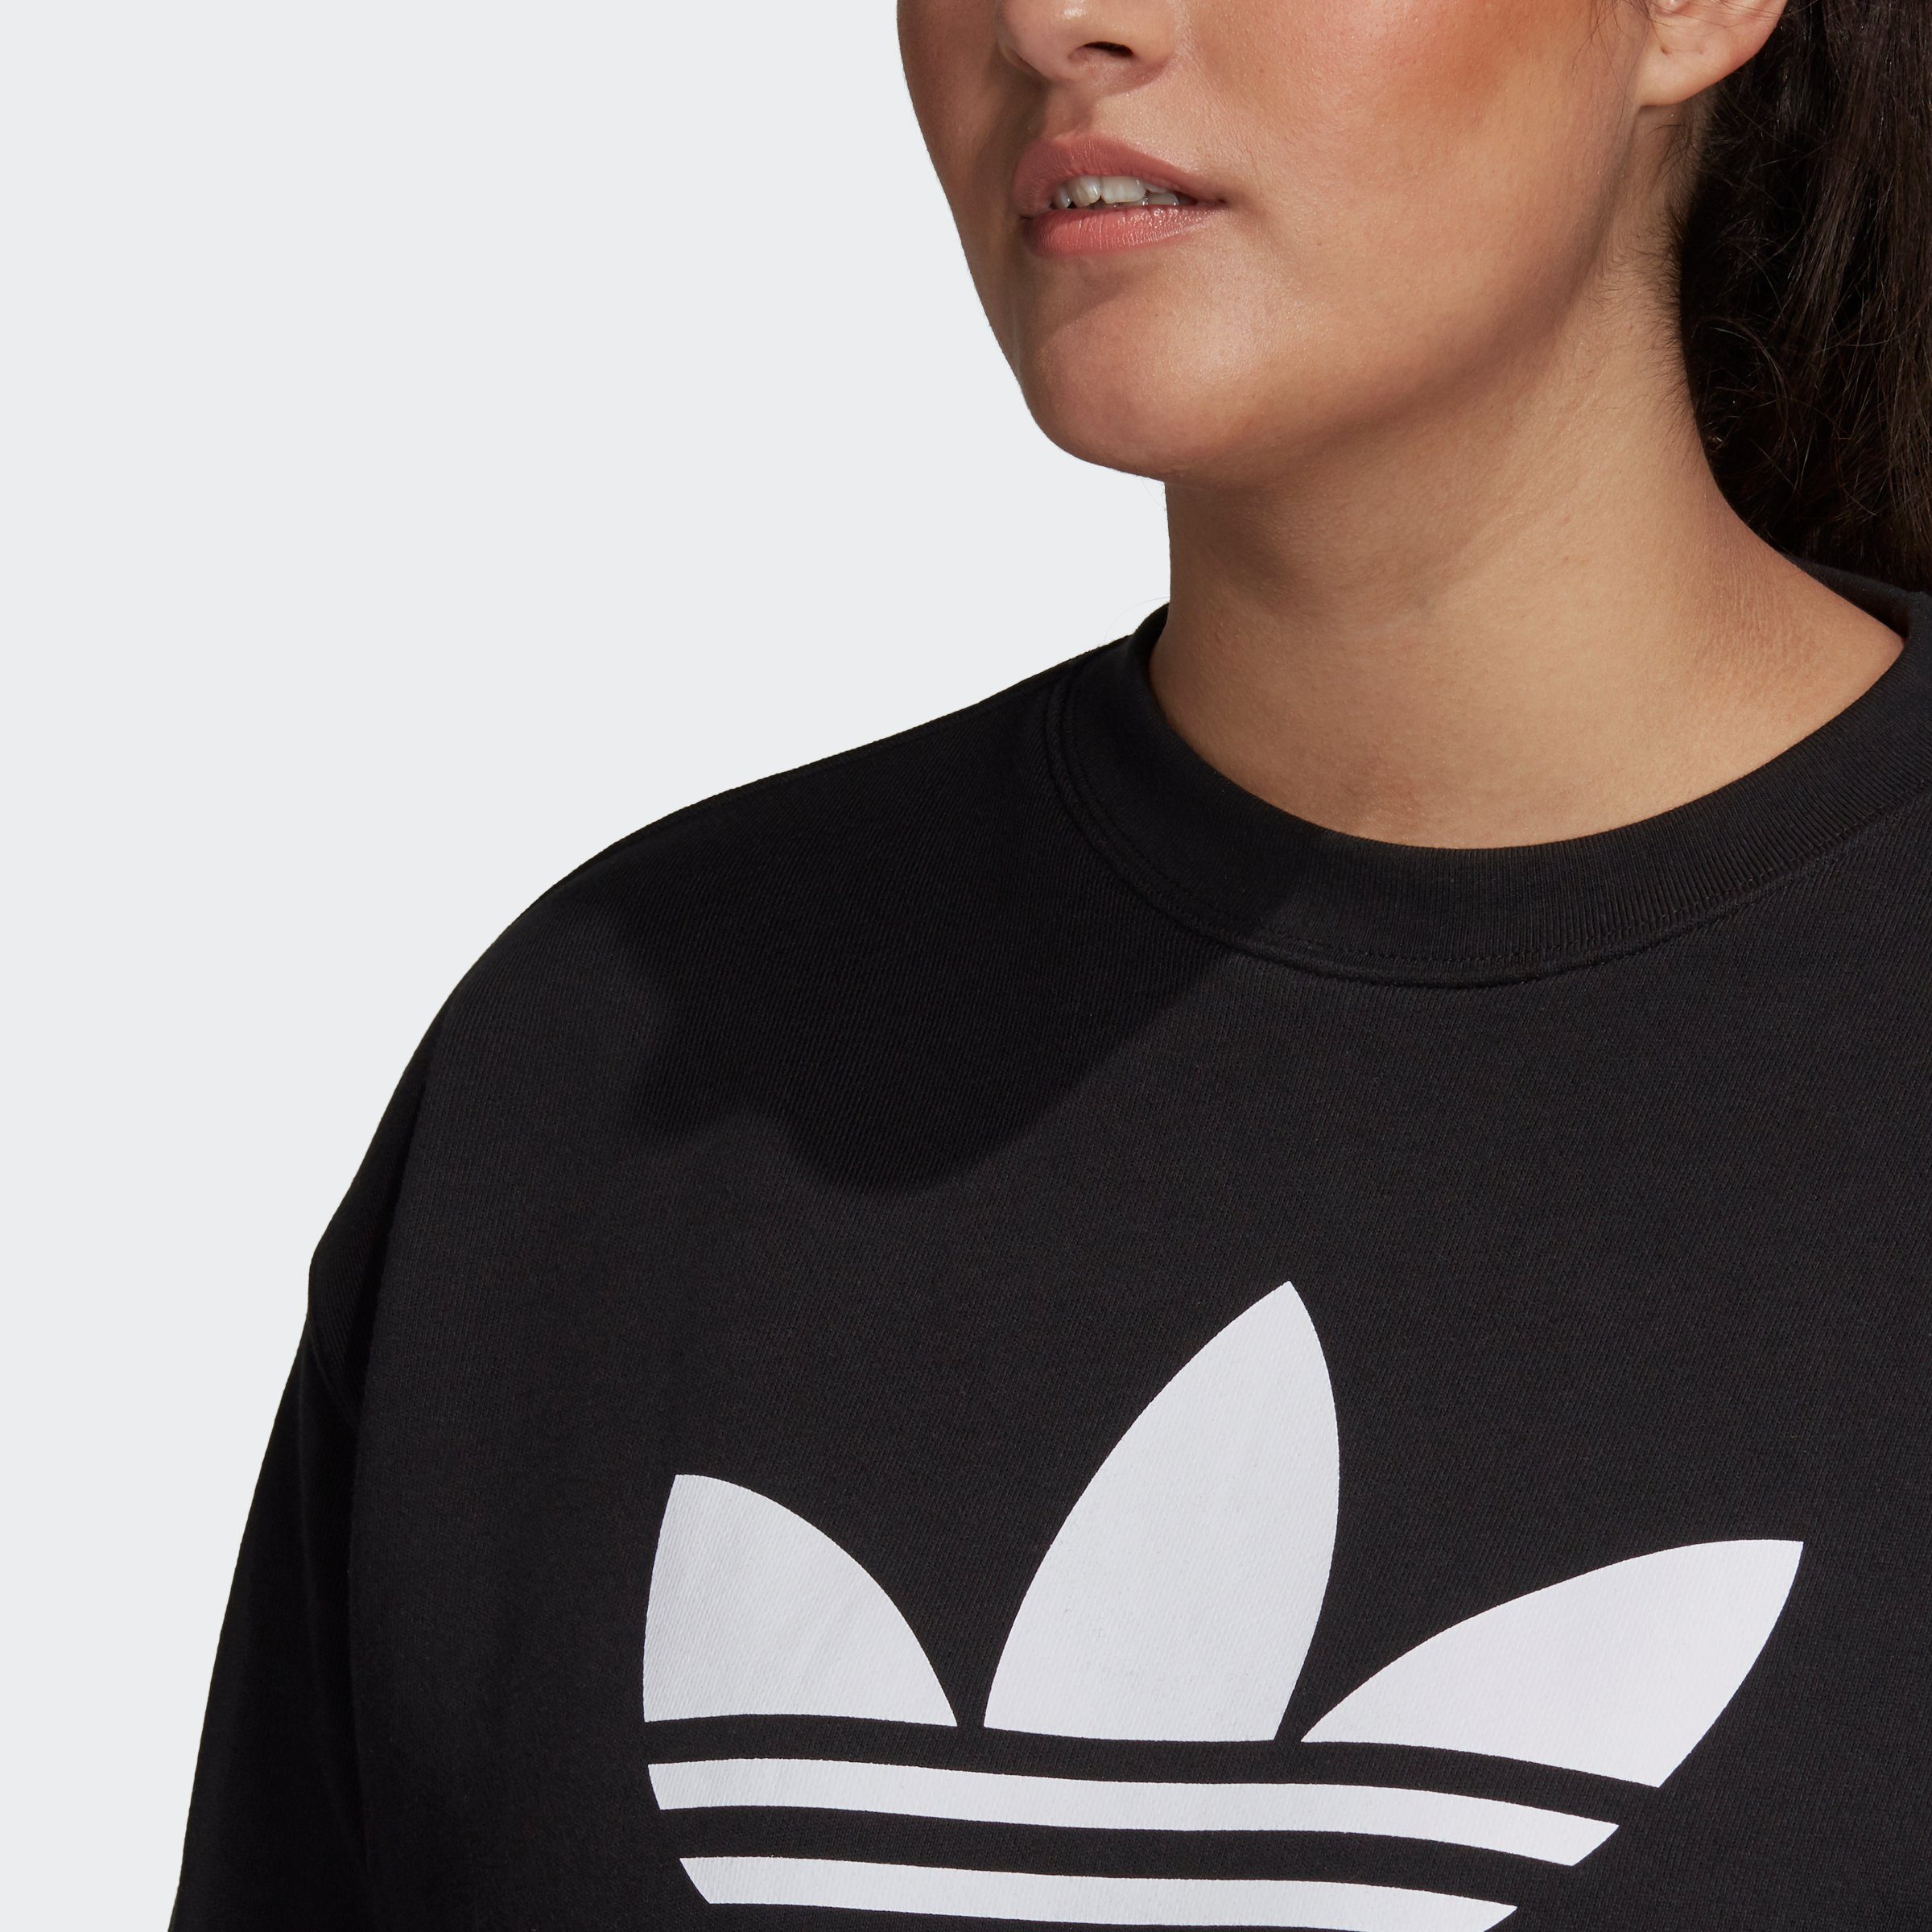 adidas BLACK/WHITE GROSSE Sweatshirt TREFOIL Originals GRÖSSEN –